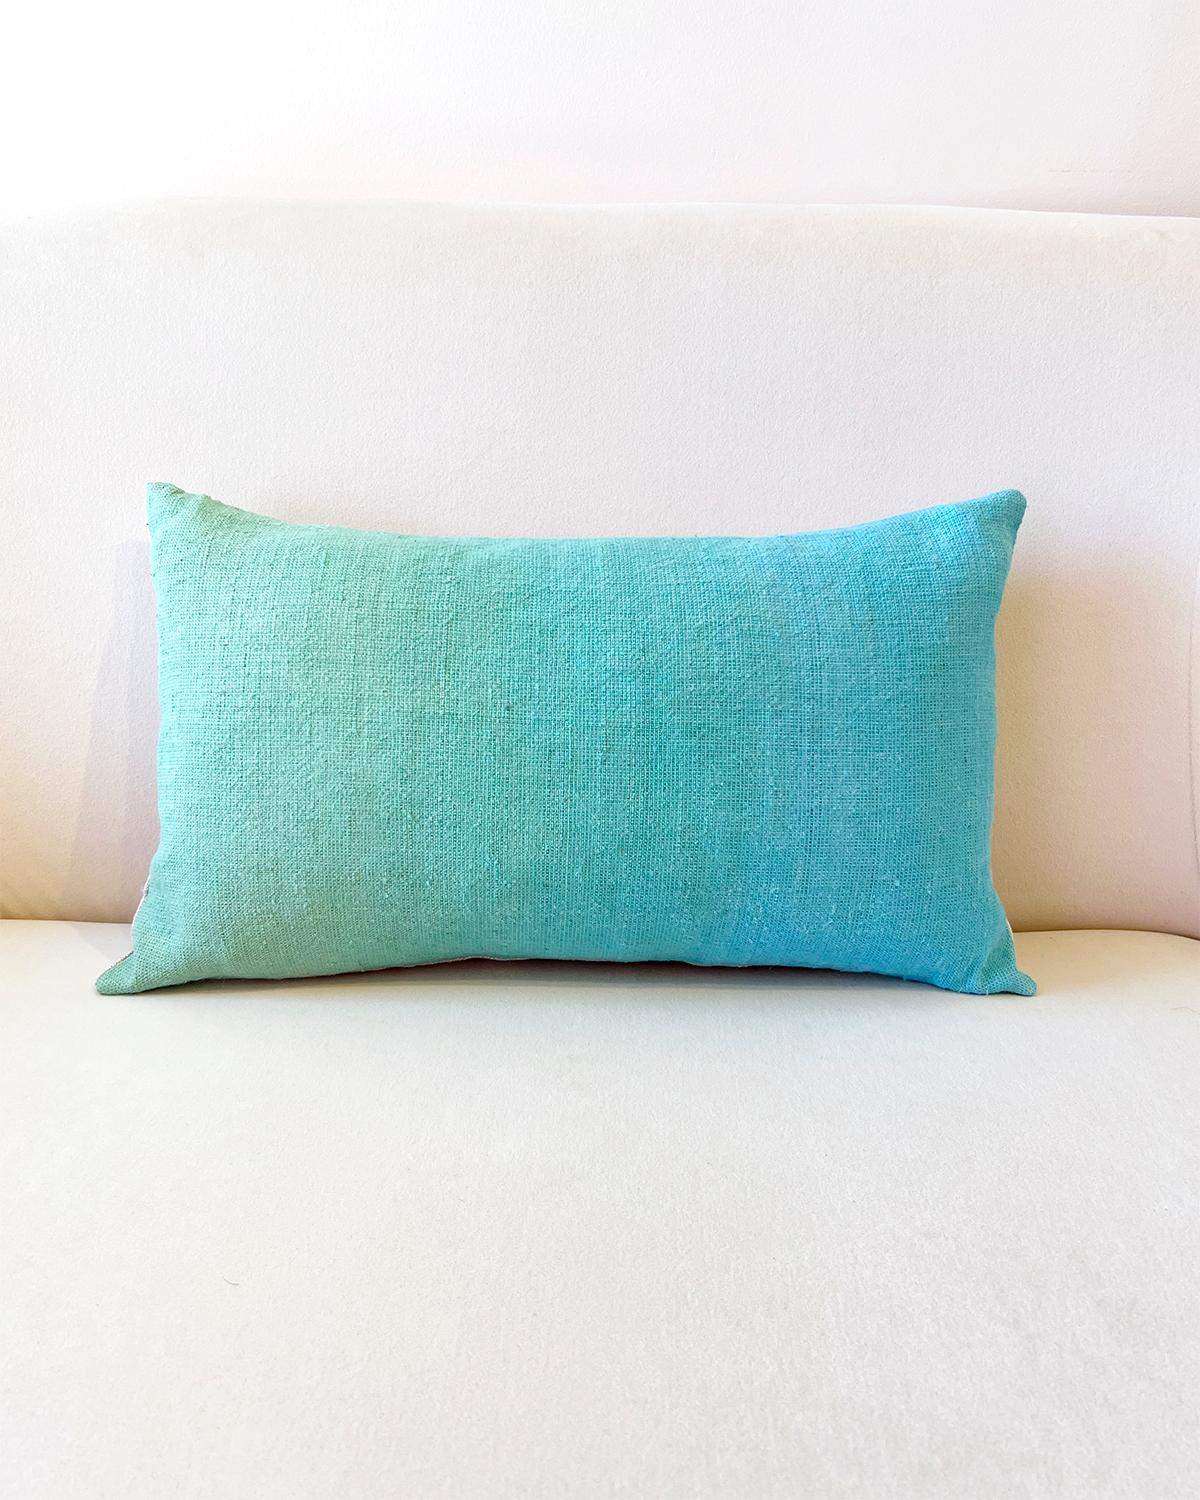 Espanyolet Aqua Ombre Hand-Painted Vintage Linen Pillow 20